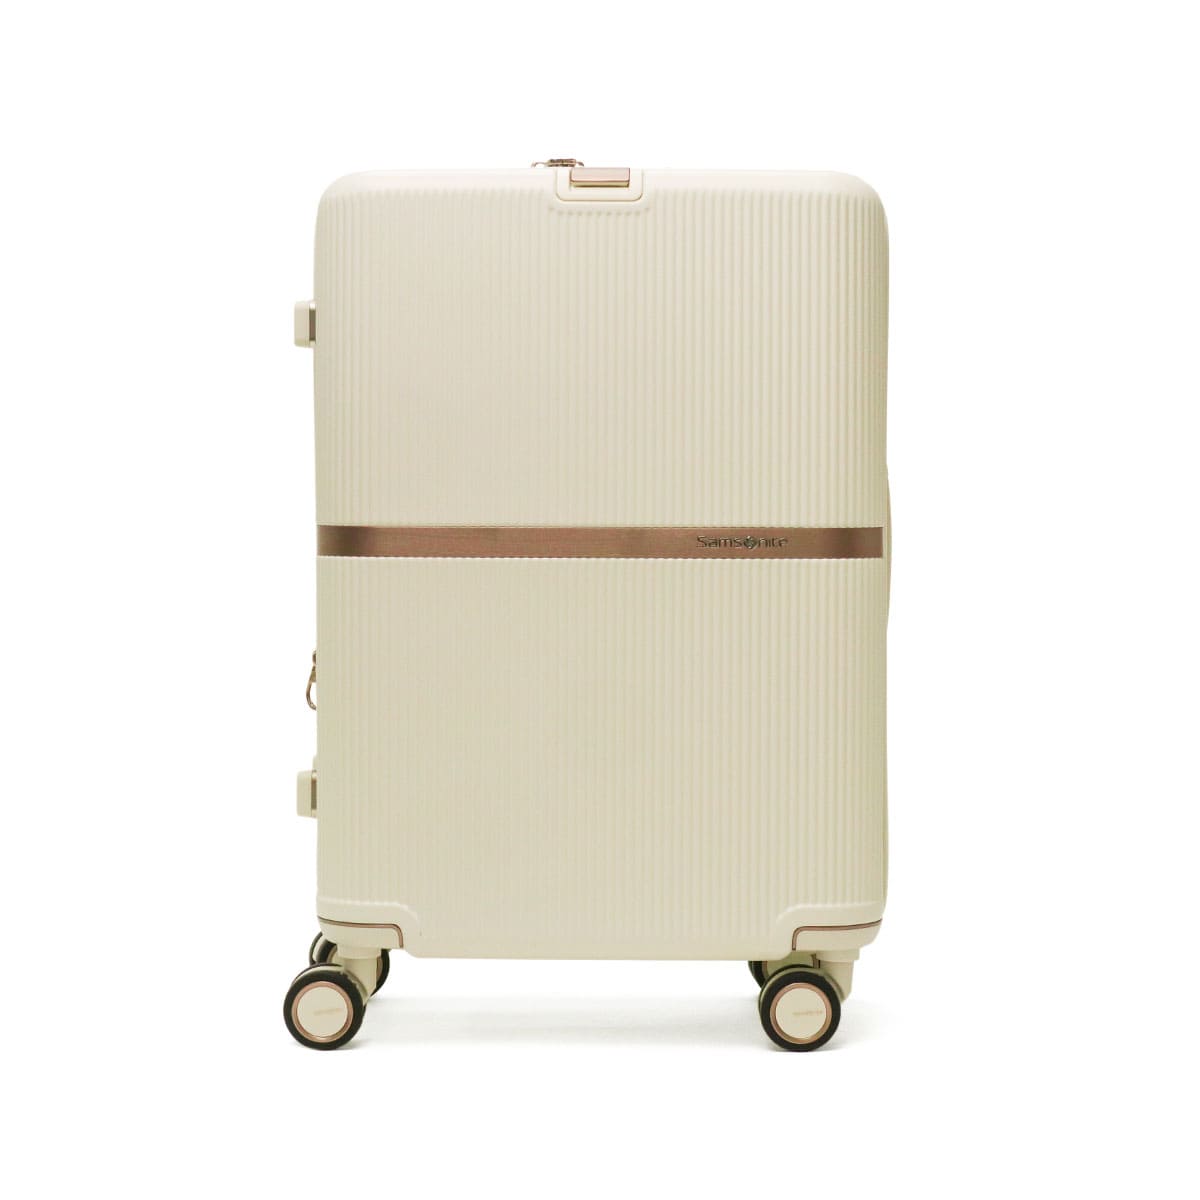 日本正規品】Samsonite サムソナイト MINTER SPINNER 61 スーツケース 